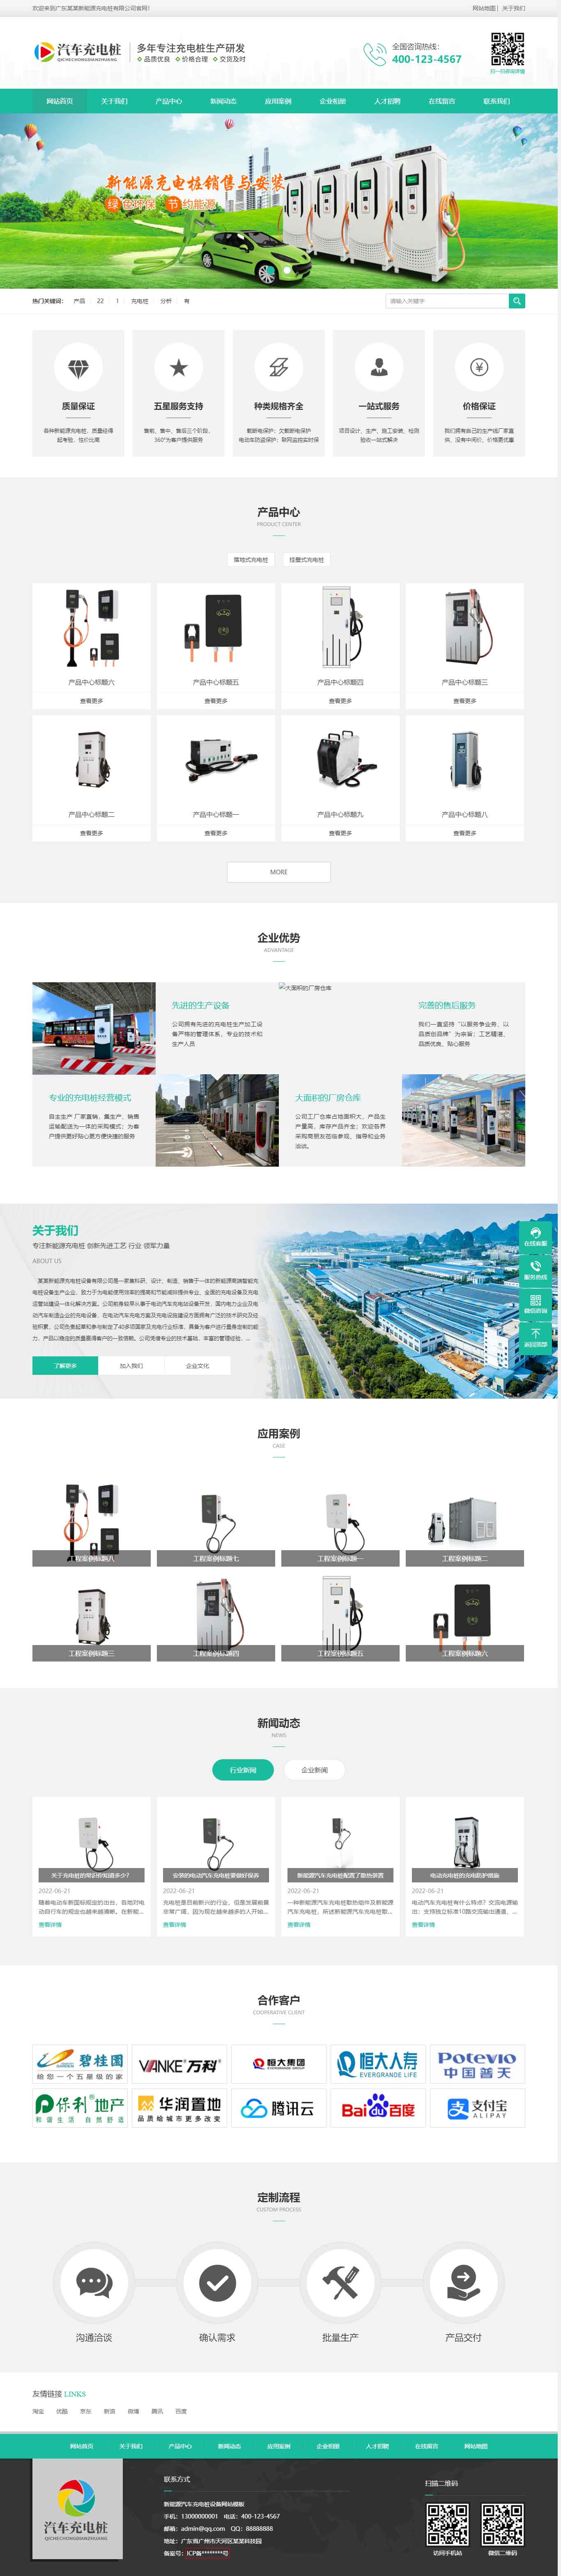 鄭州做網站新能源汽車充電樁設備網站建設設計制作(圖2)